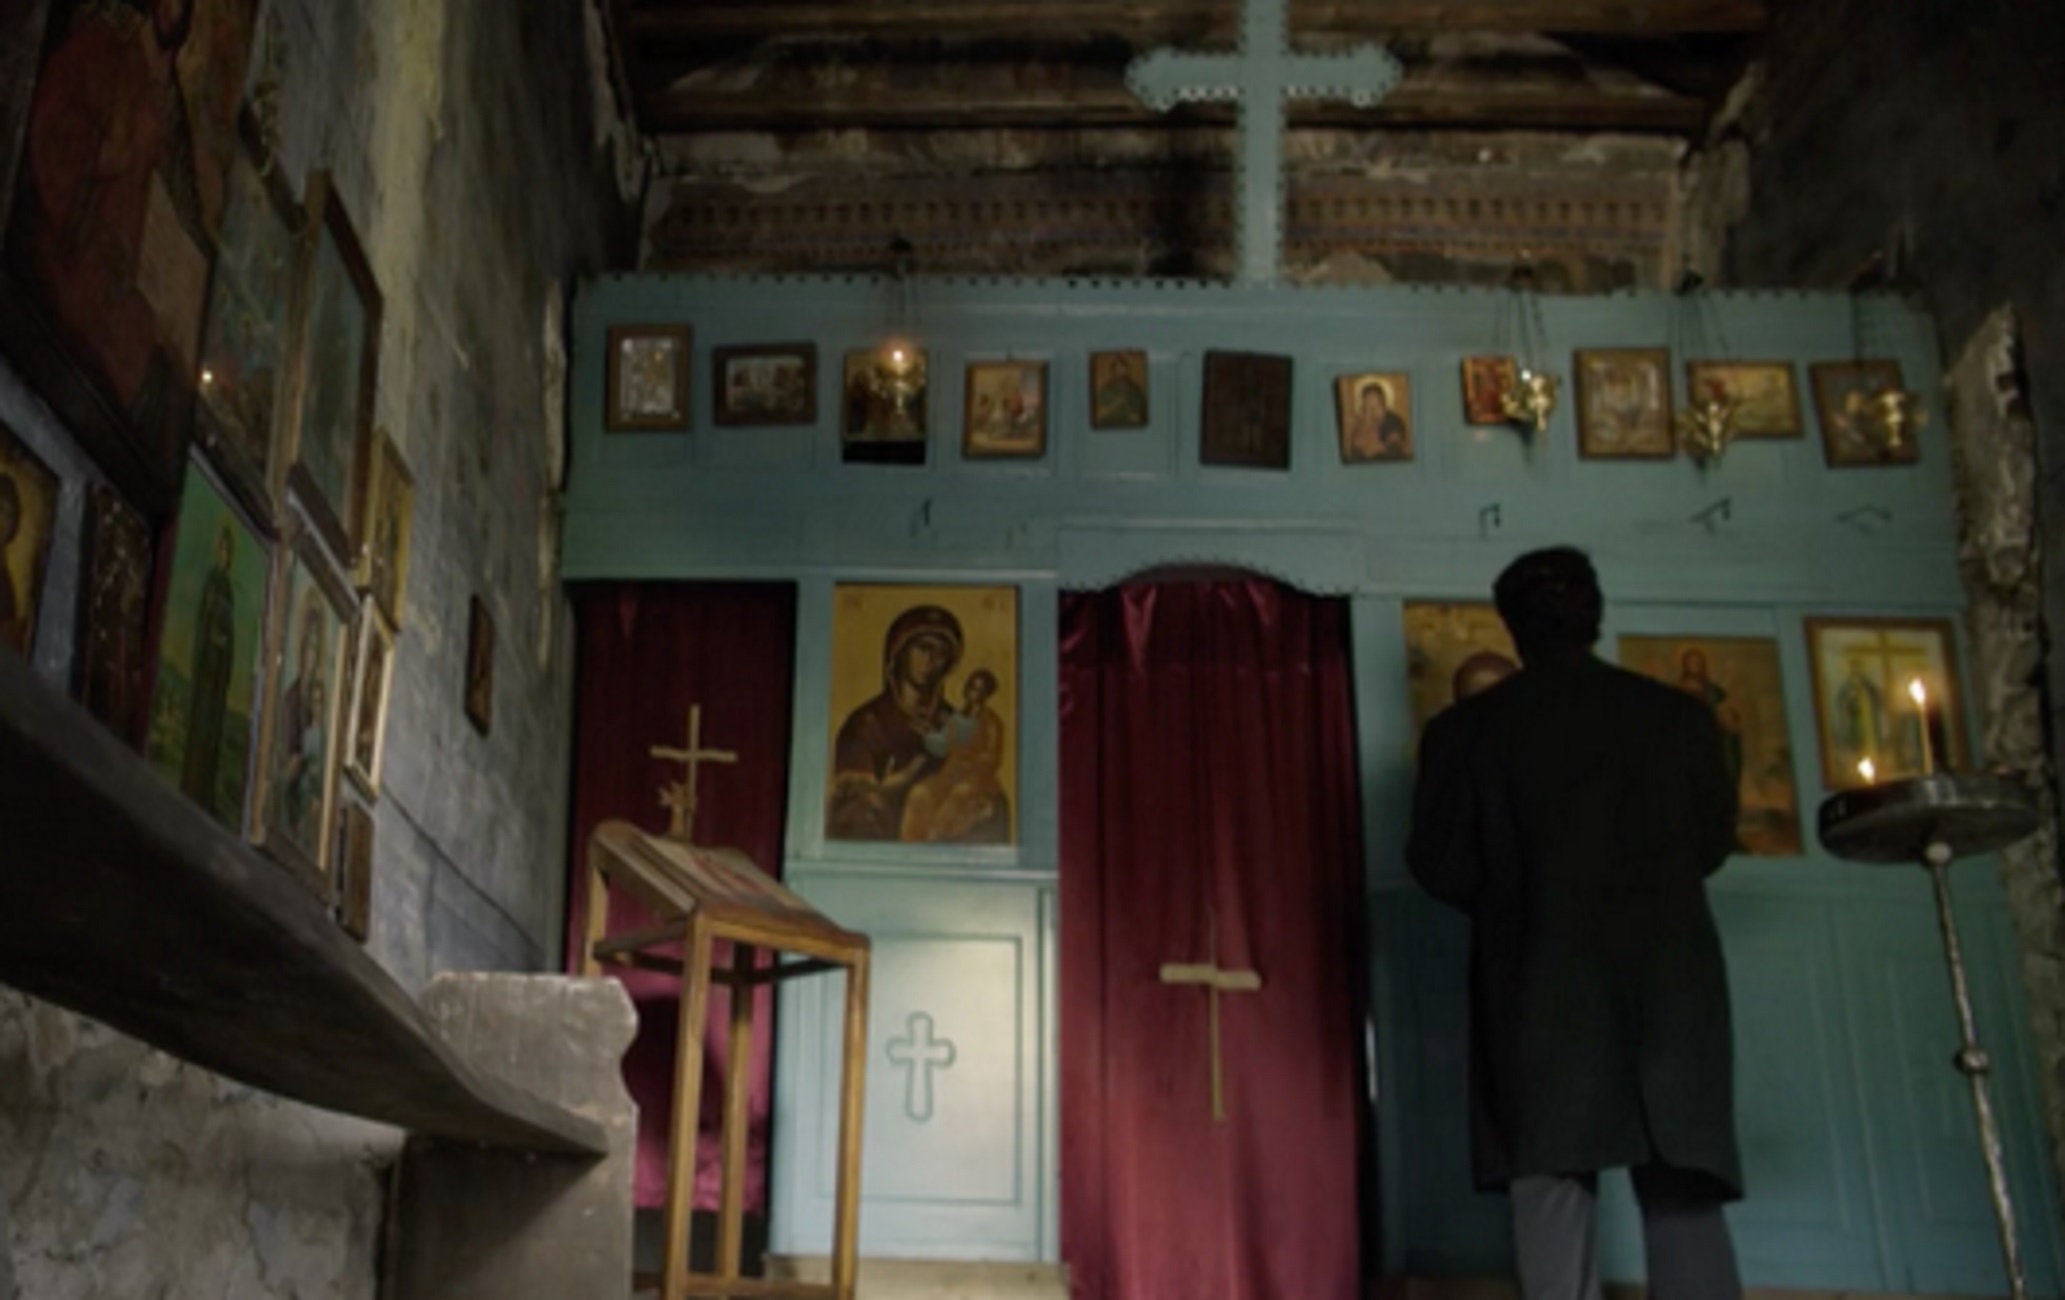 Άγιος Παϊσιος: Η άγνωστη ιστορία της εκκλησίας στην Ήπειρο και η επιλογή για τα τηλεοπτικά γυρίσματα